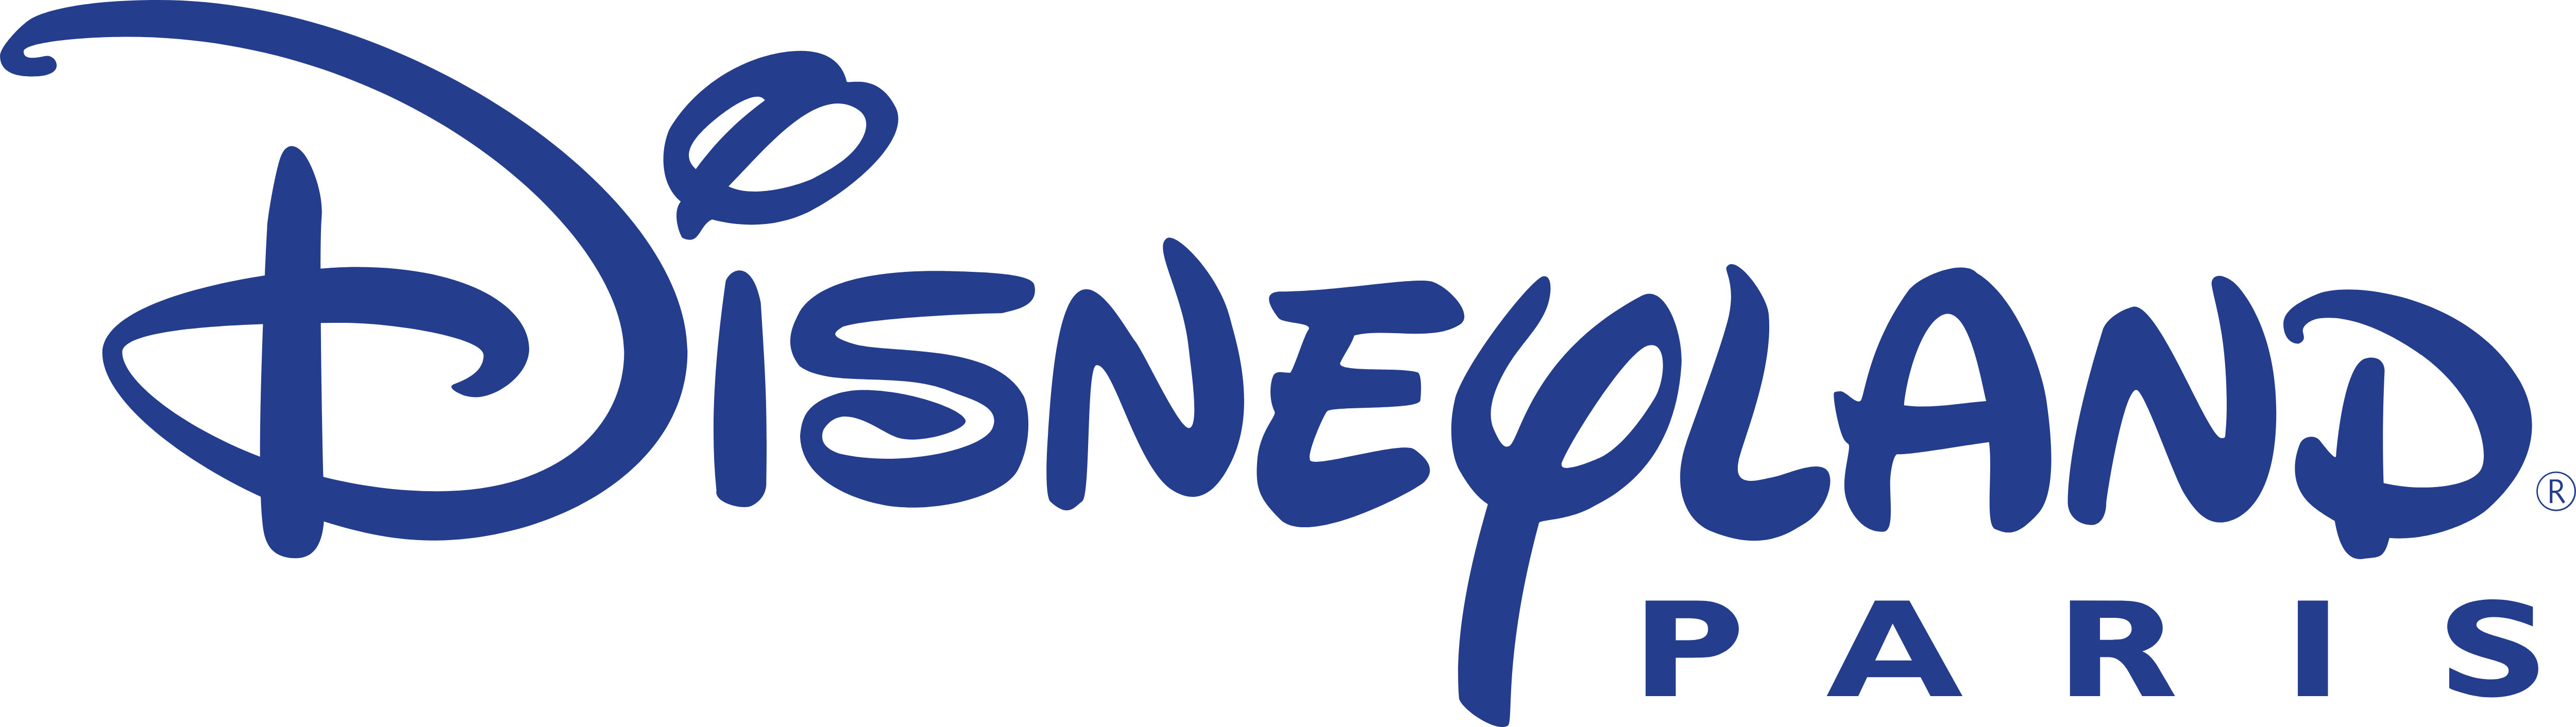 Disneyland Logo PNG Image